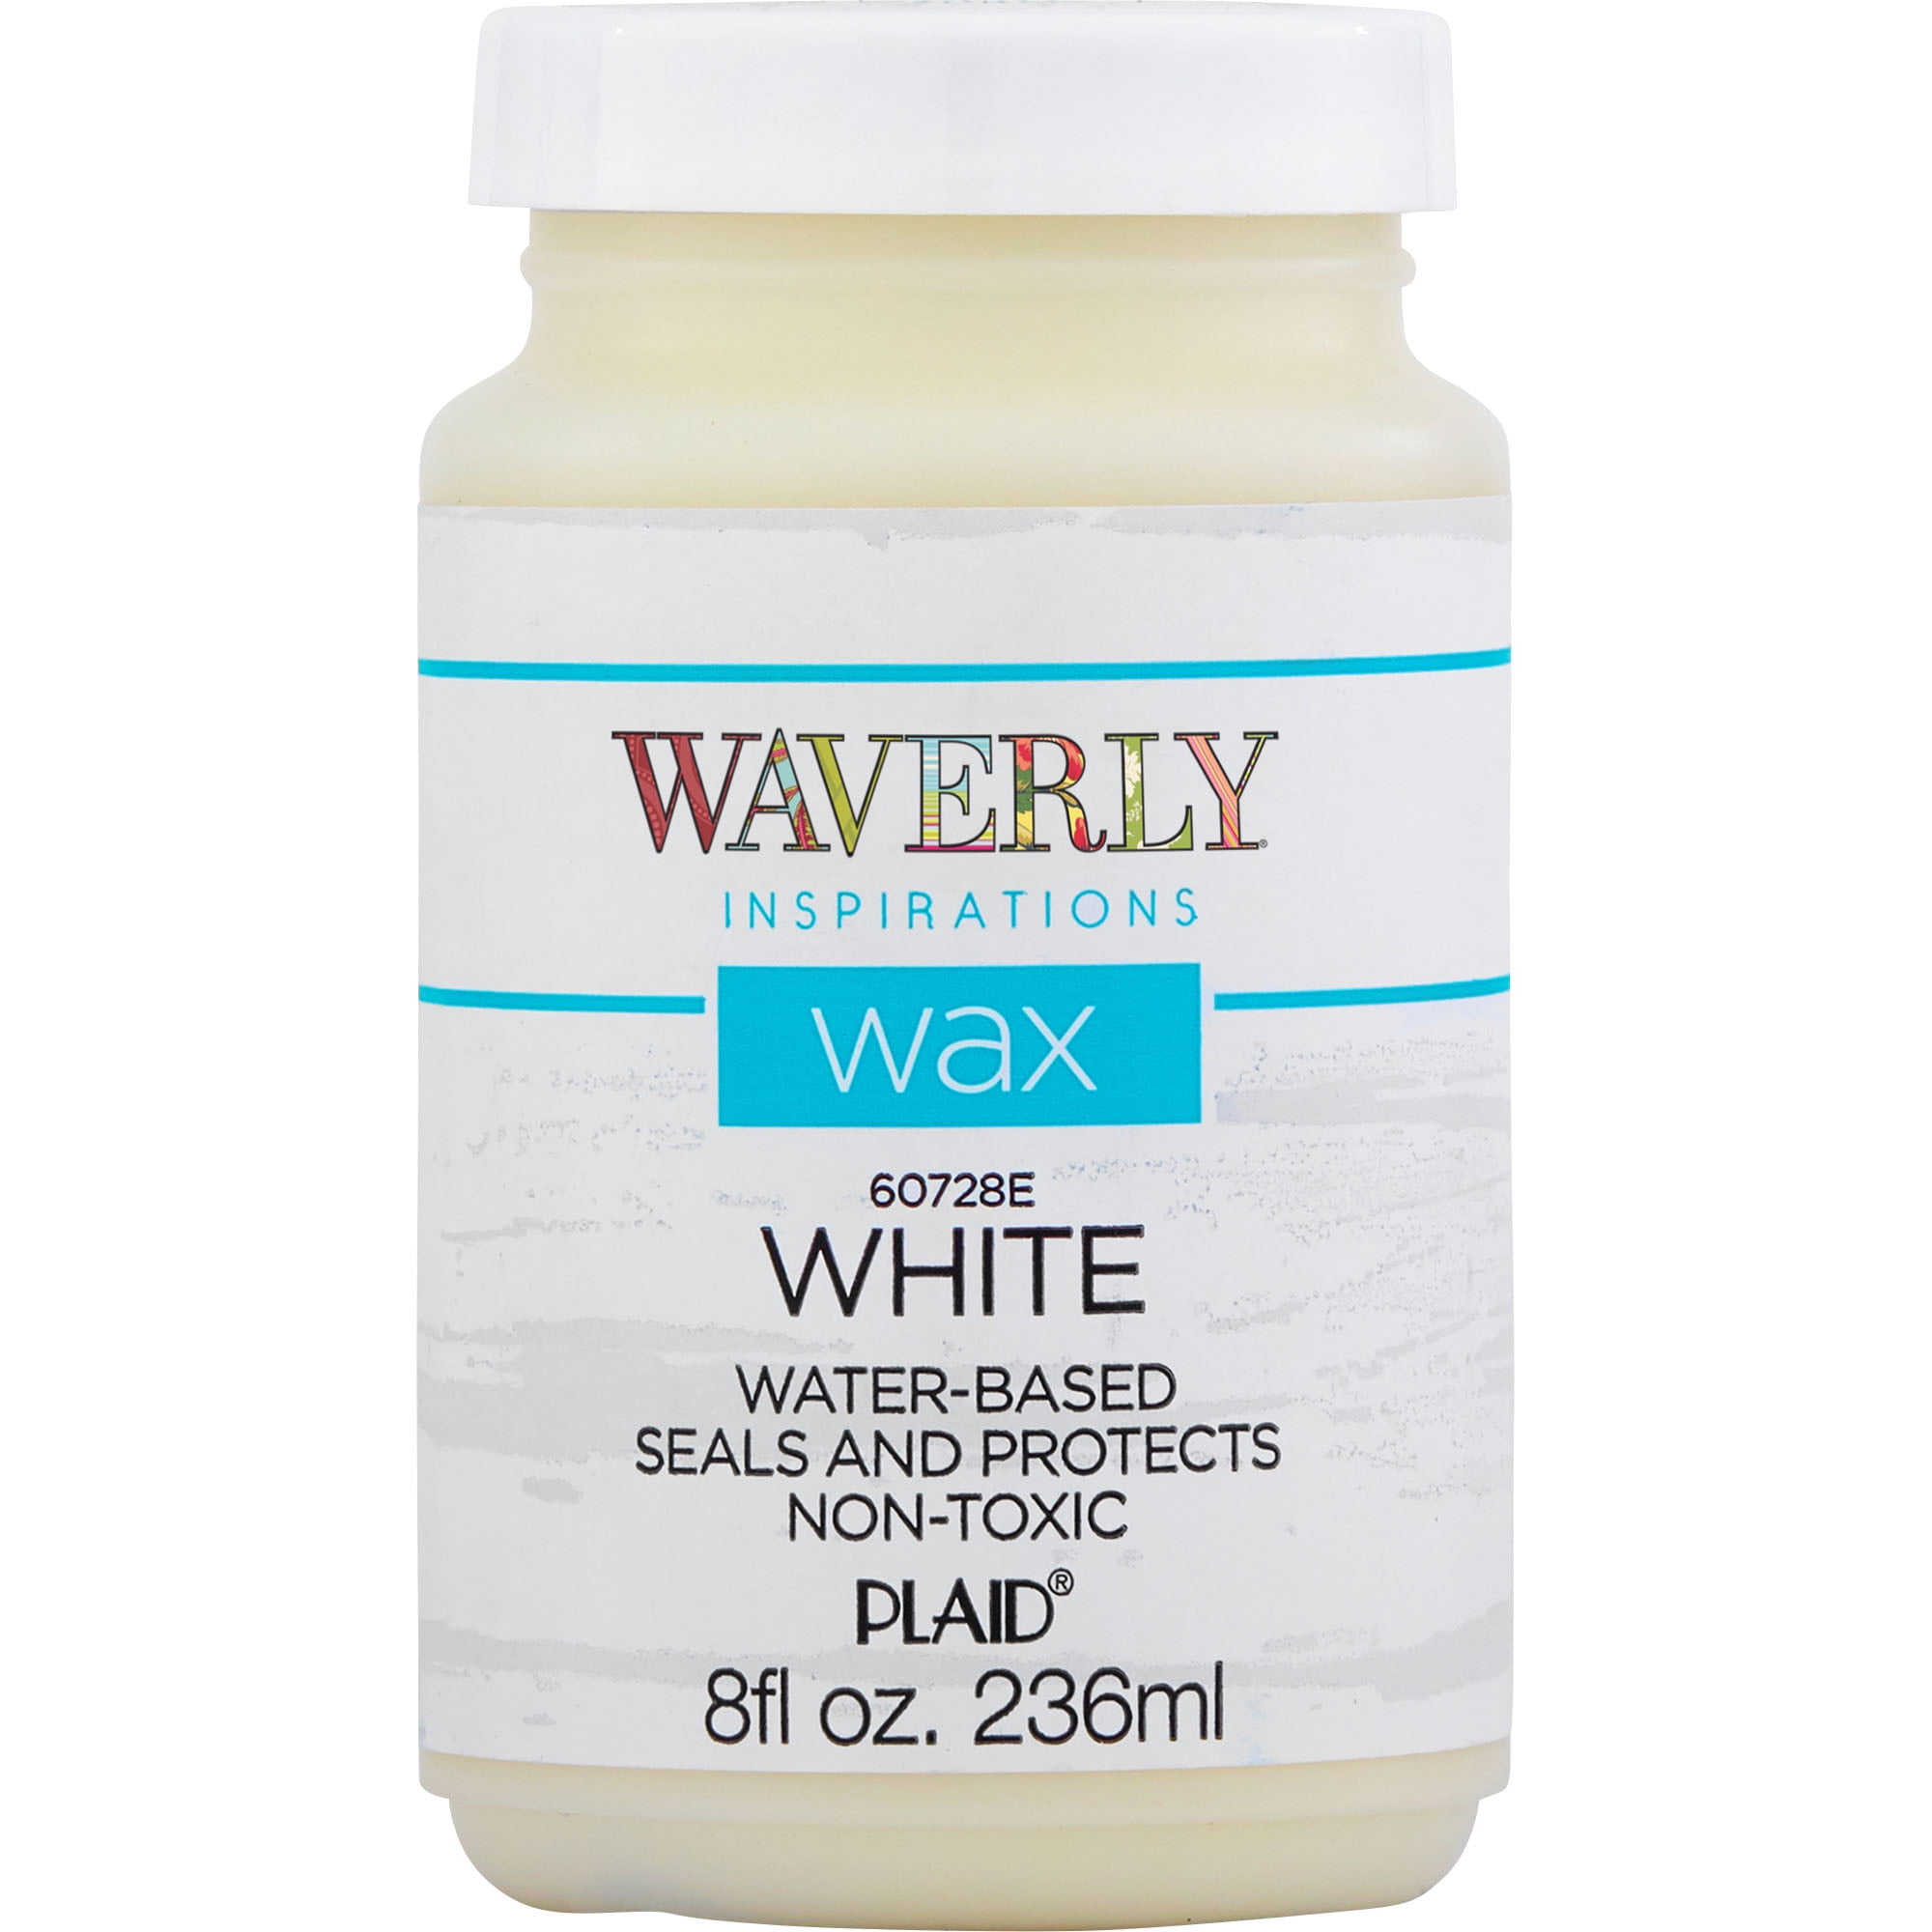 Shop Plaid Waverly ® Inspirations Wax - Clear, 8 oz. - 60678E - 60678E